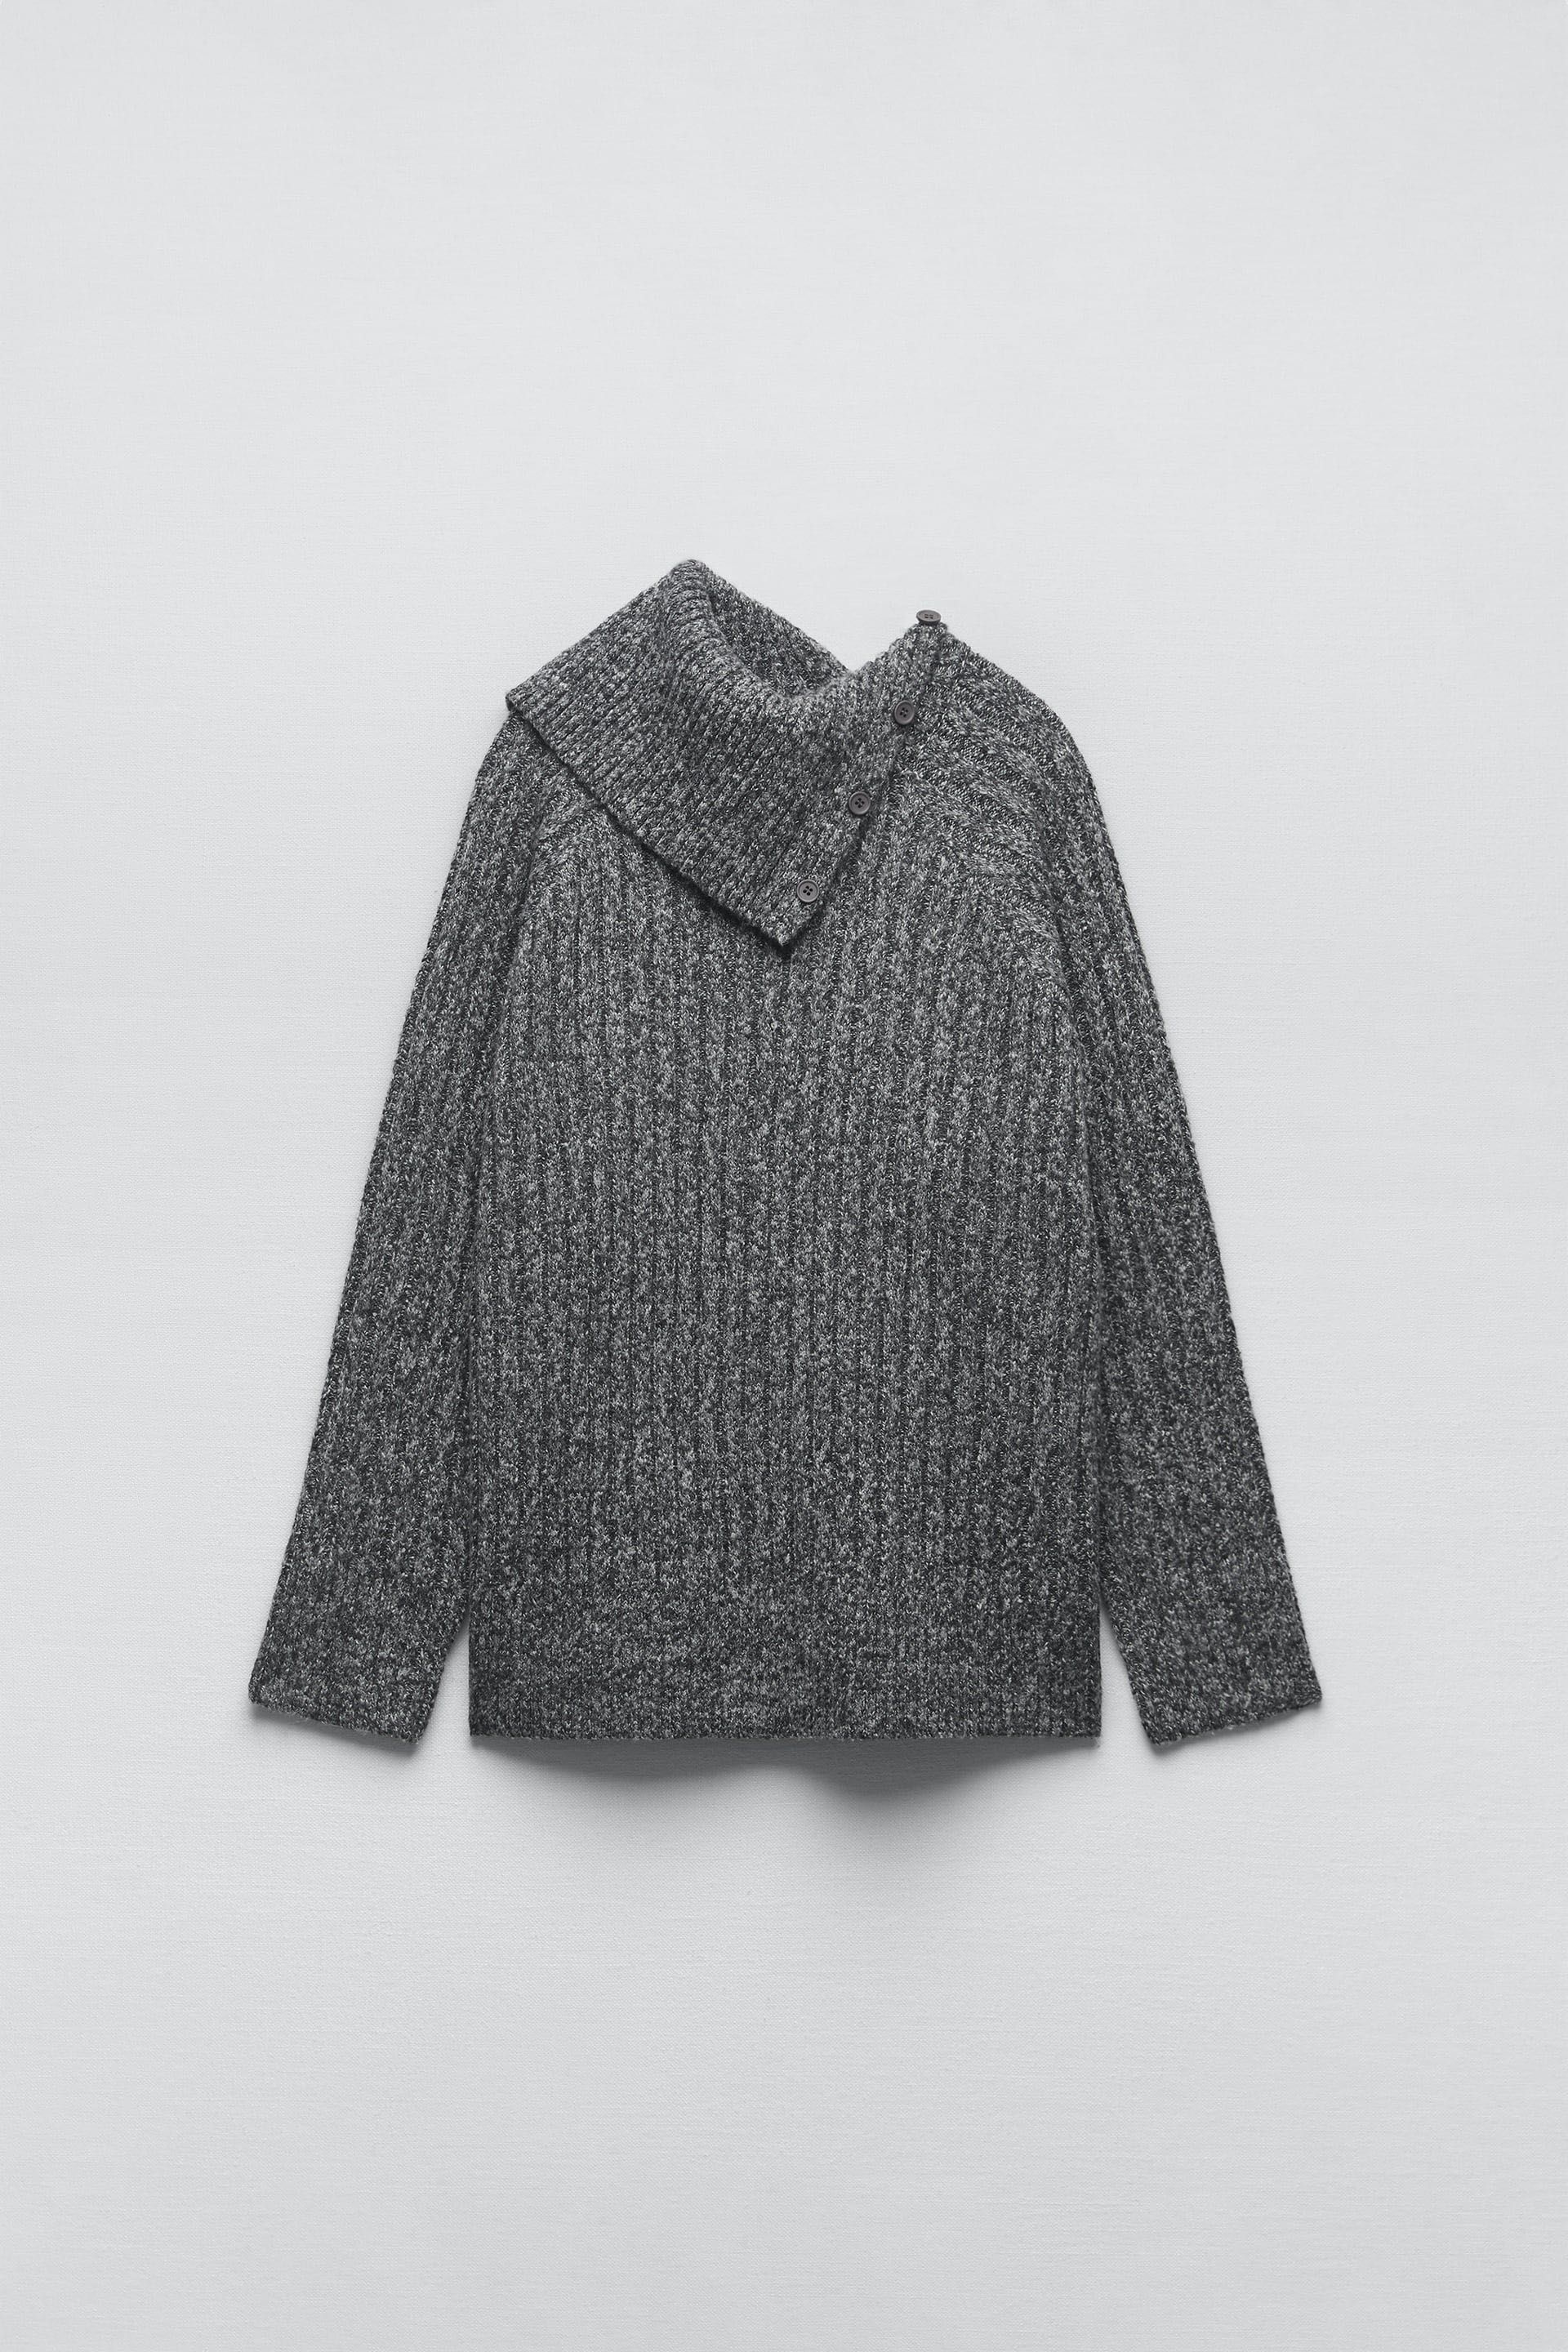 Sweter Zara, 38 40